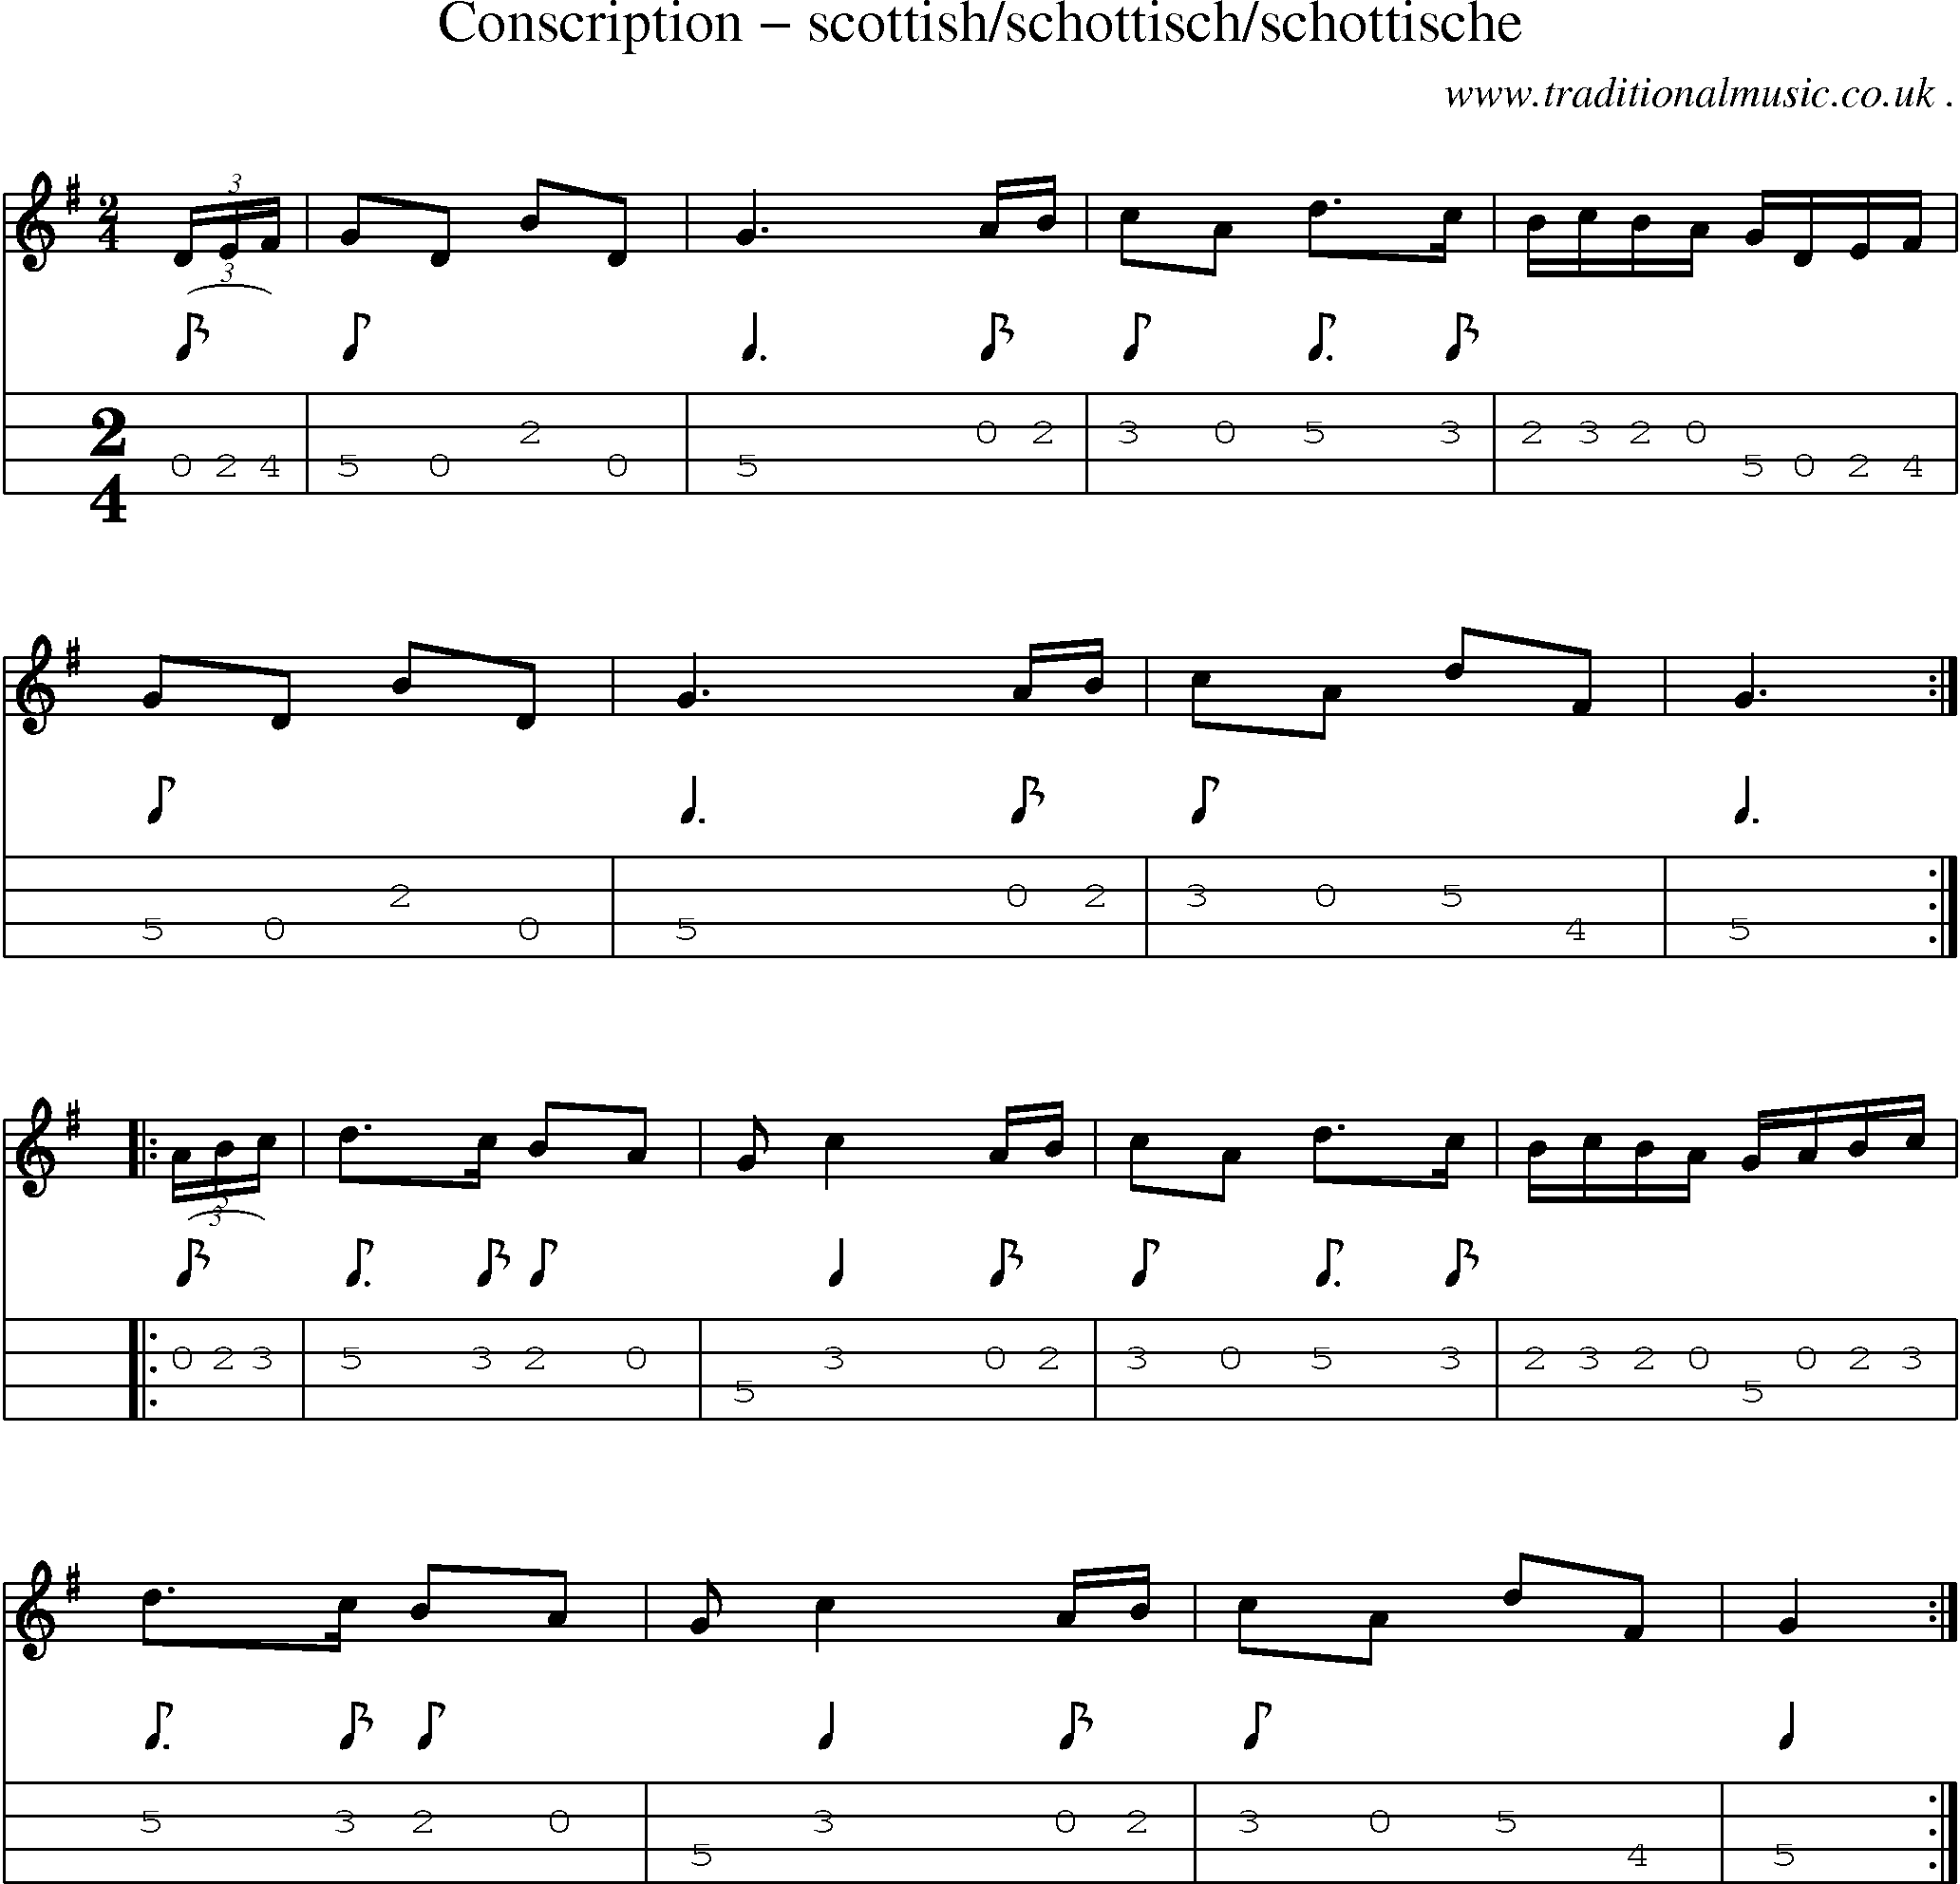 Sheet-Music and Mandolin Tabs for Conscription Scottishschottischschottische